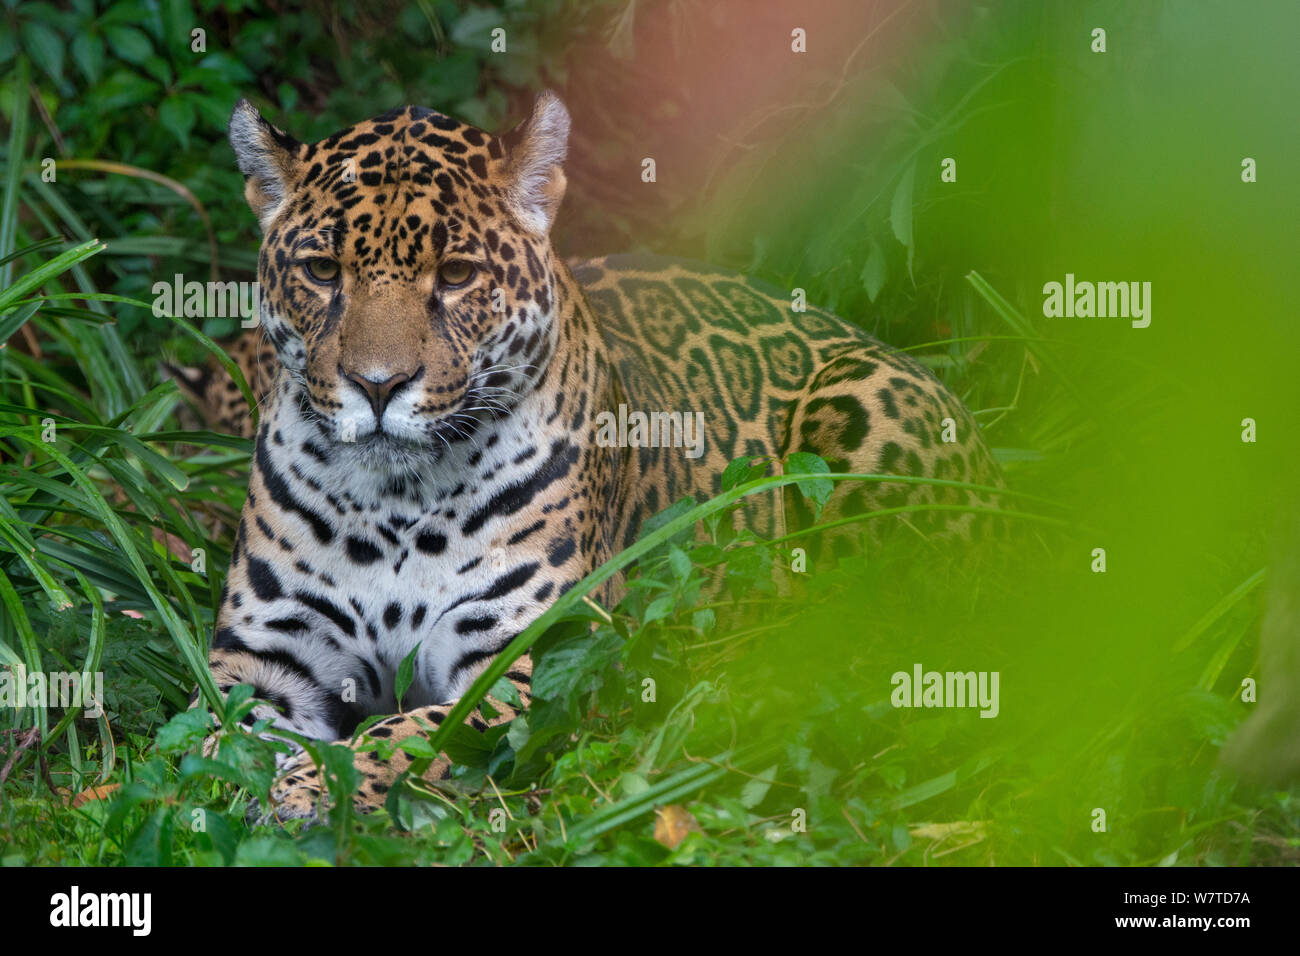 Weibliche Jaguar (Panthera onca), Captive, beheimatet in Süd- und Mittelamerika. Stockfoto